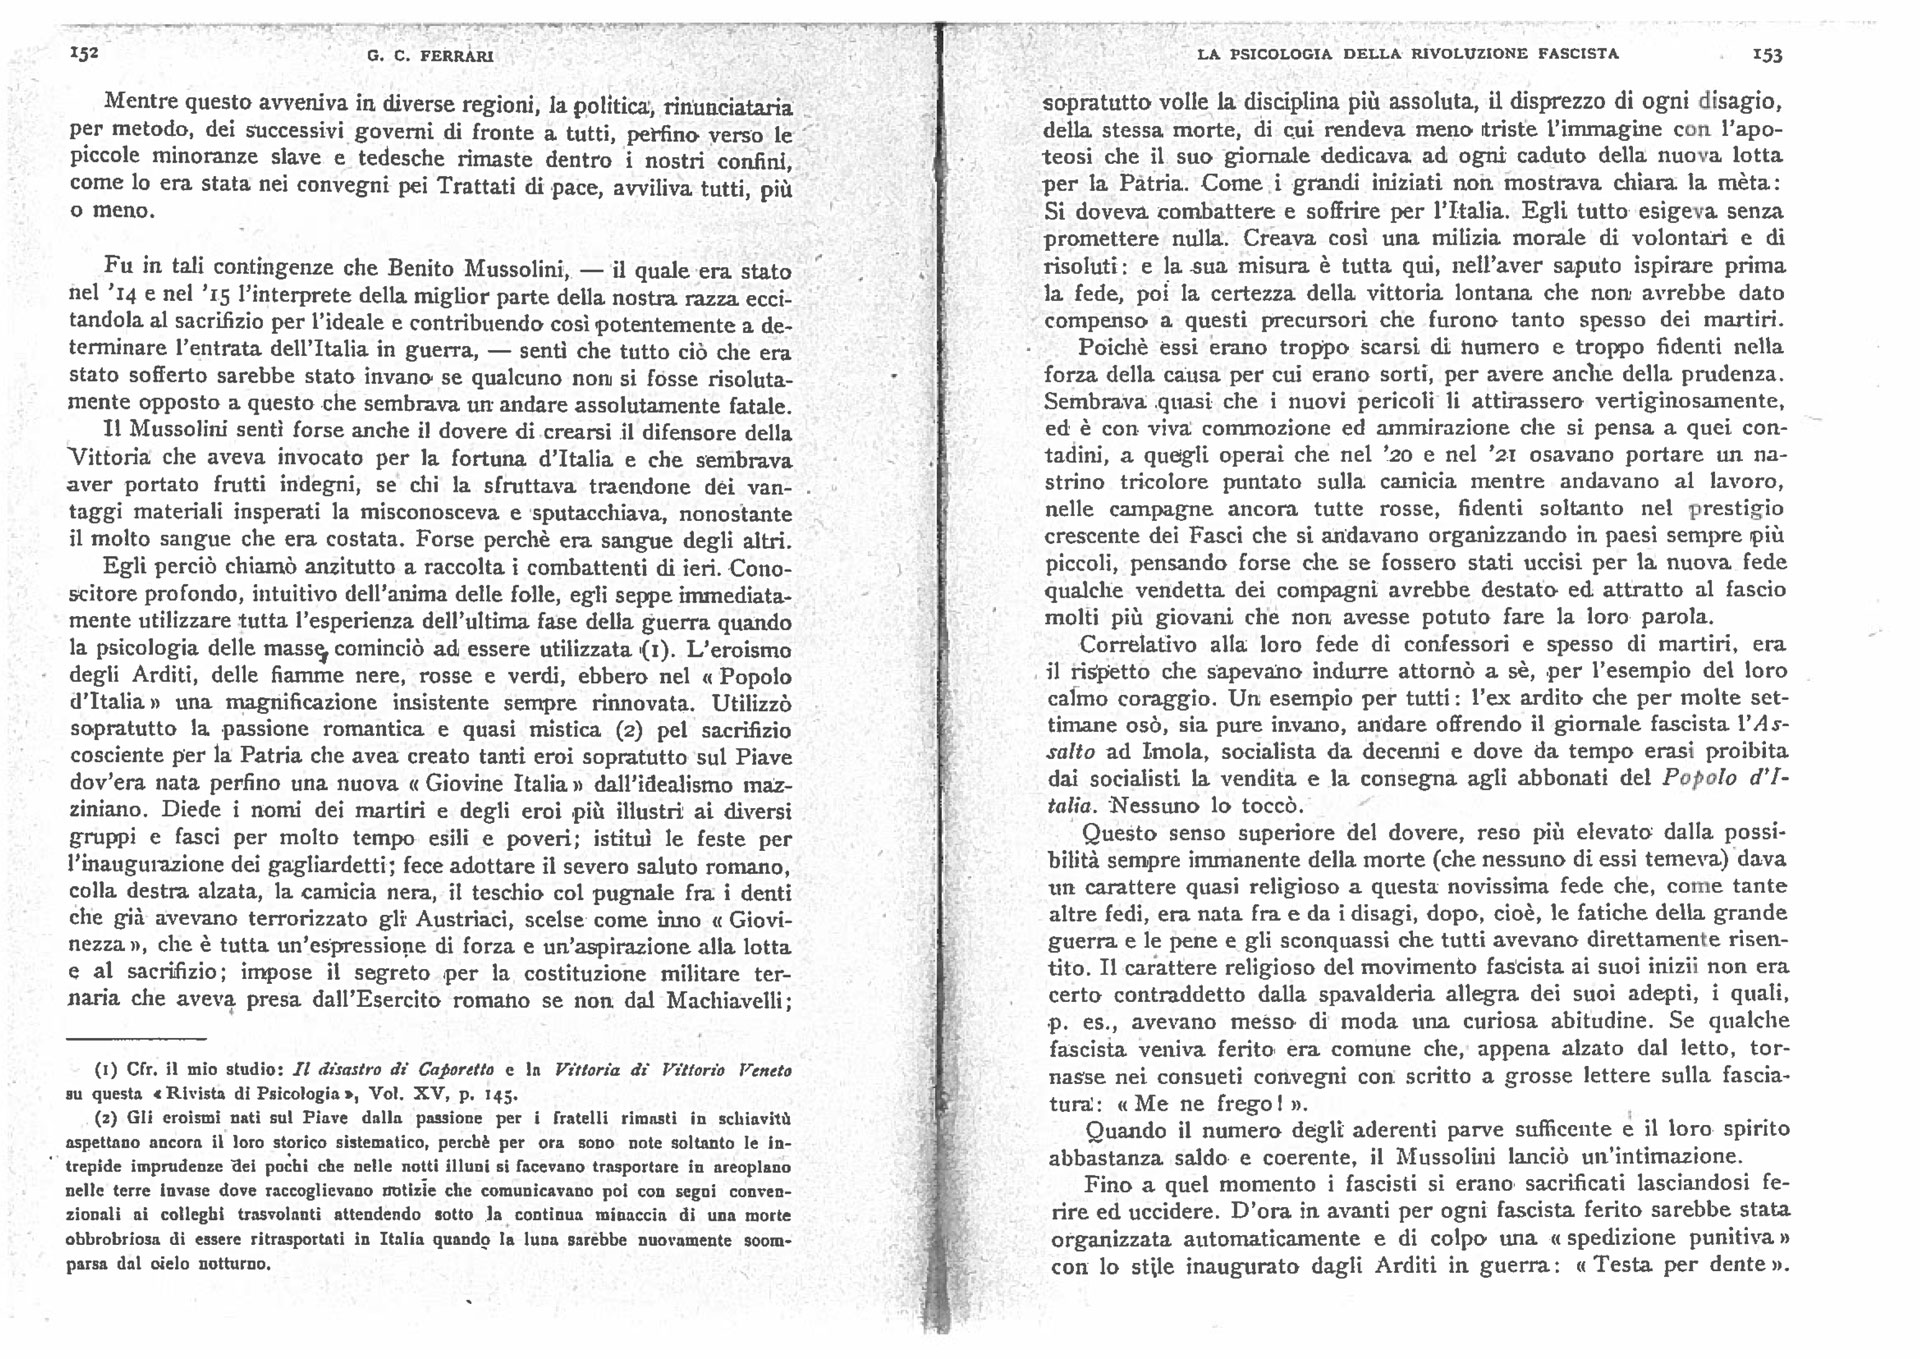 G.C. Ferrari (1922). La psicologia della rivoluzione fascista. Rivista di psicologia